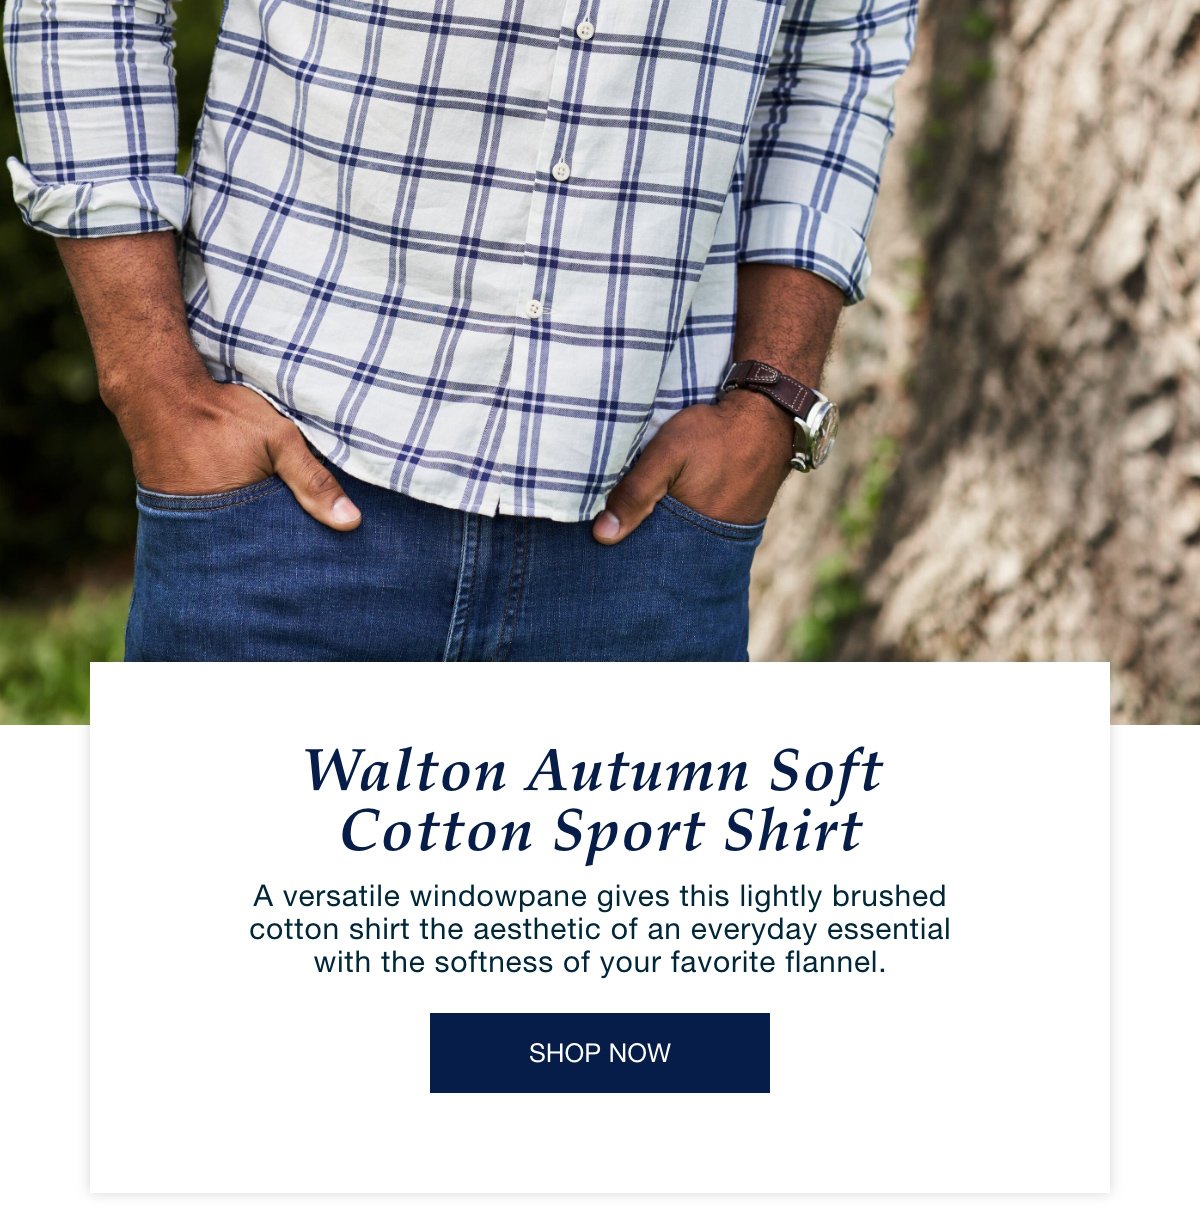 Walton Autumn Soft Cotton Sport Shirt - Shop Now